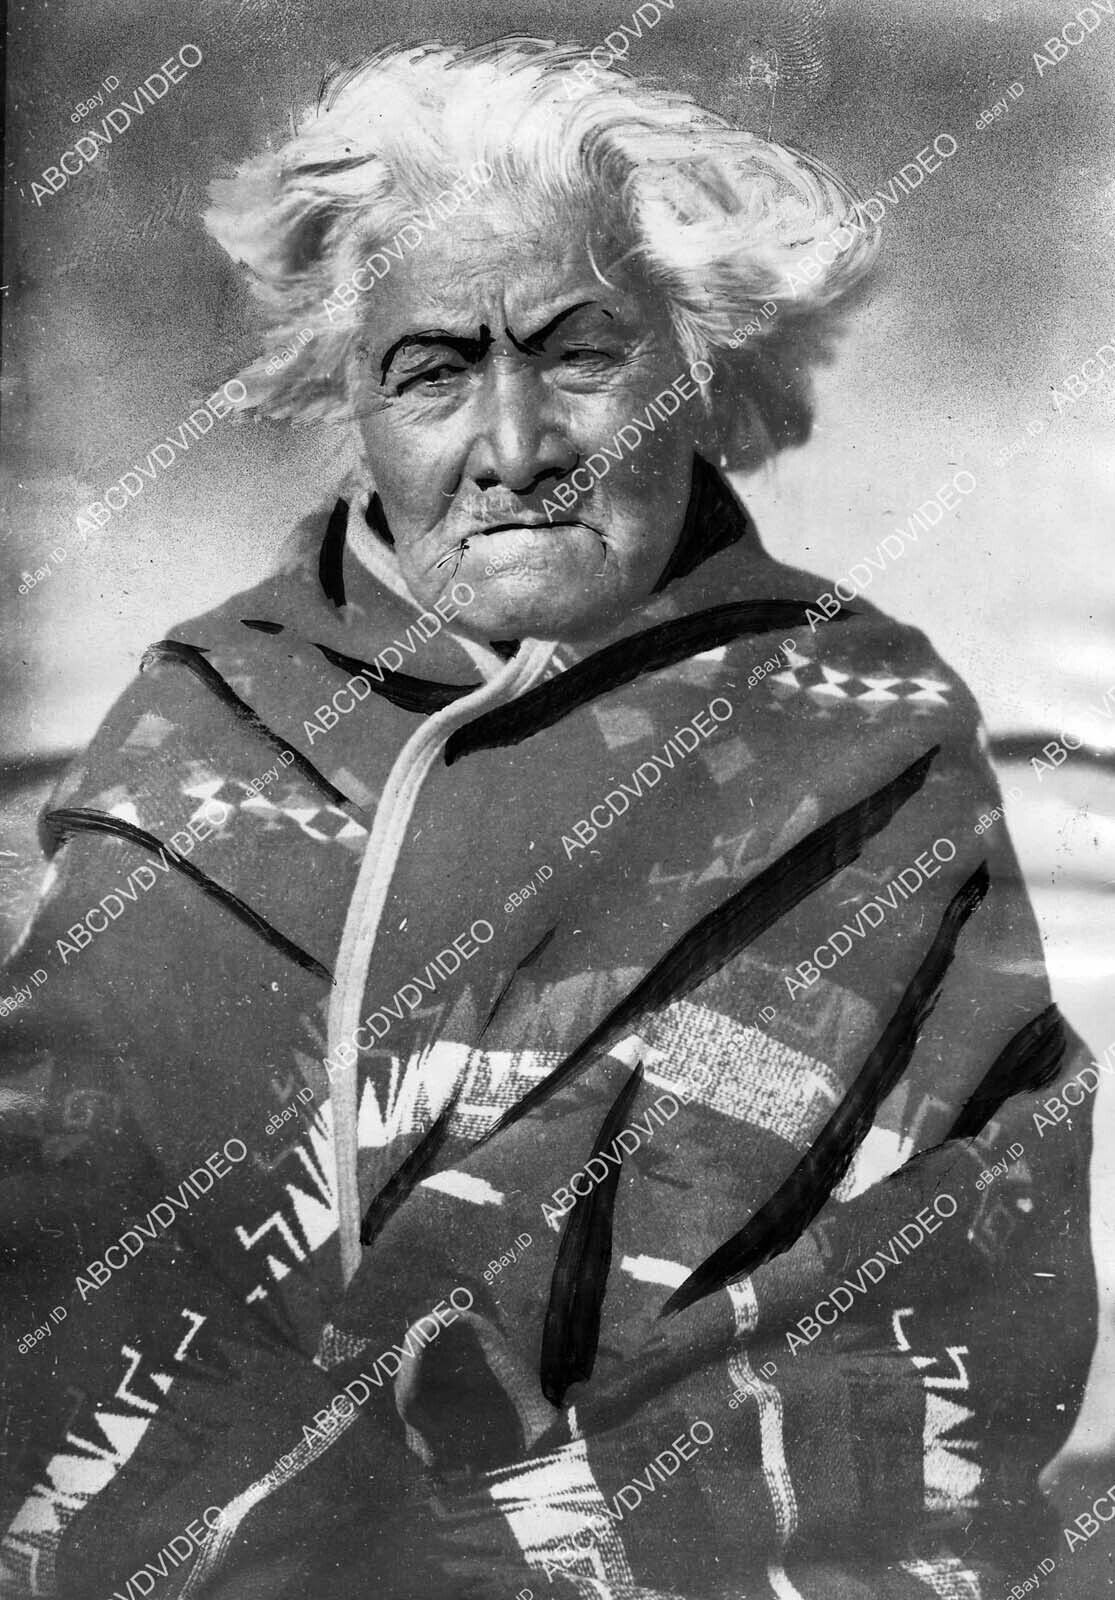 crp-63251 1927 Native American Pottawatomie Indian (Potawatomi) Lawrence Kansas